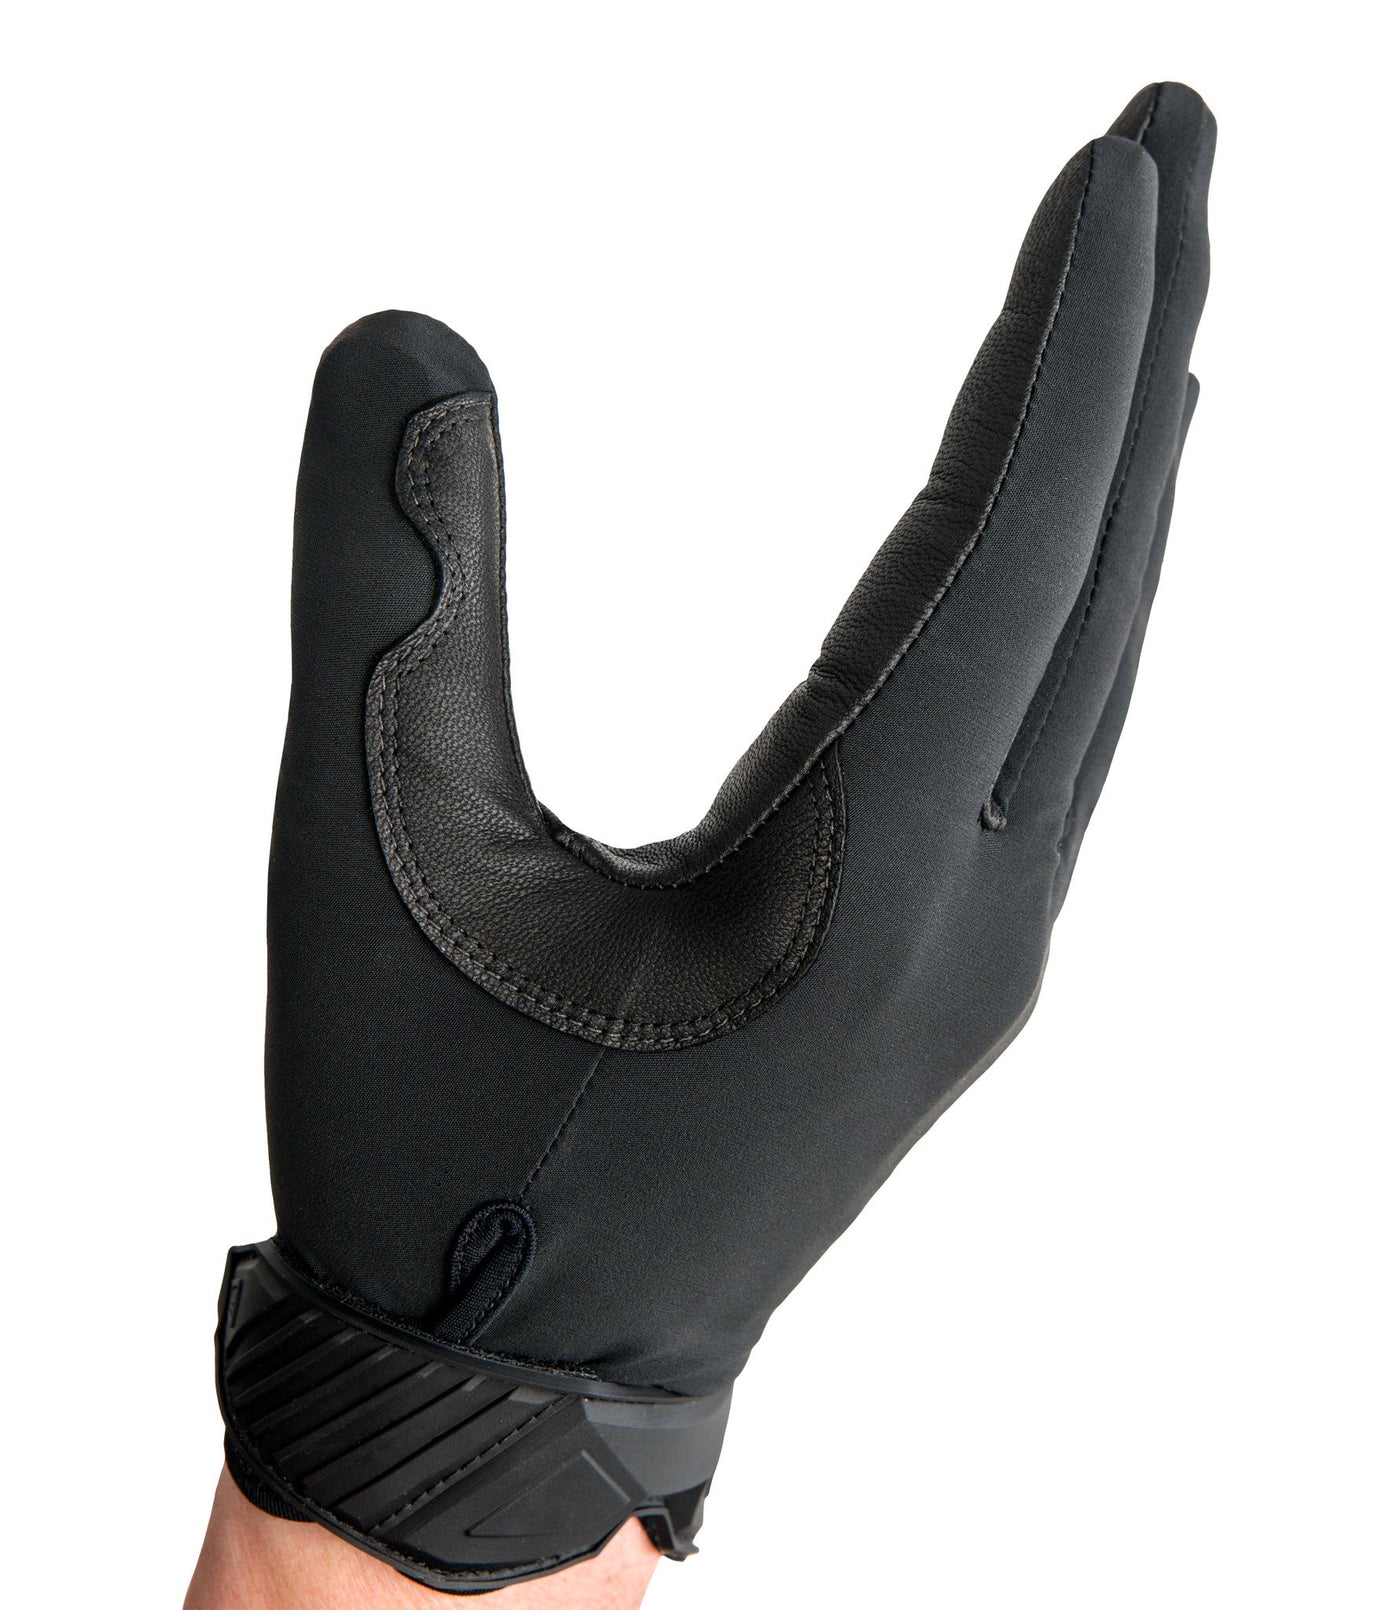 Women’s Lightweight Patrol Glove in Black U-Shape